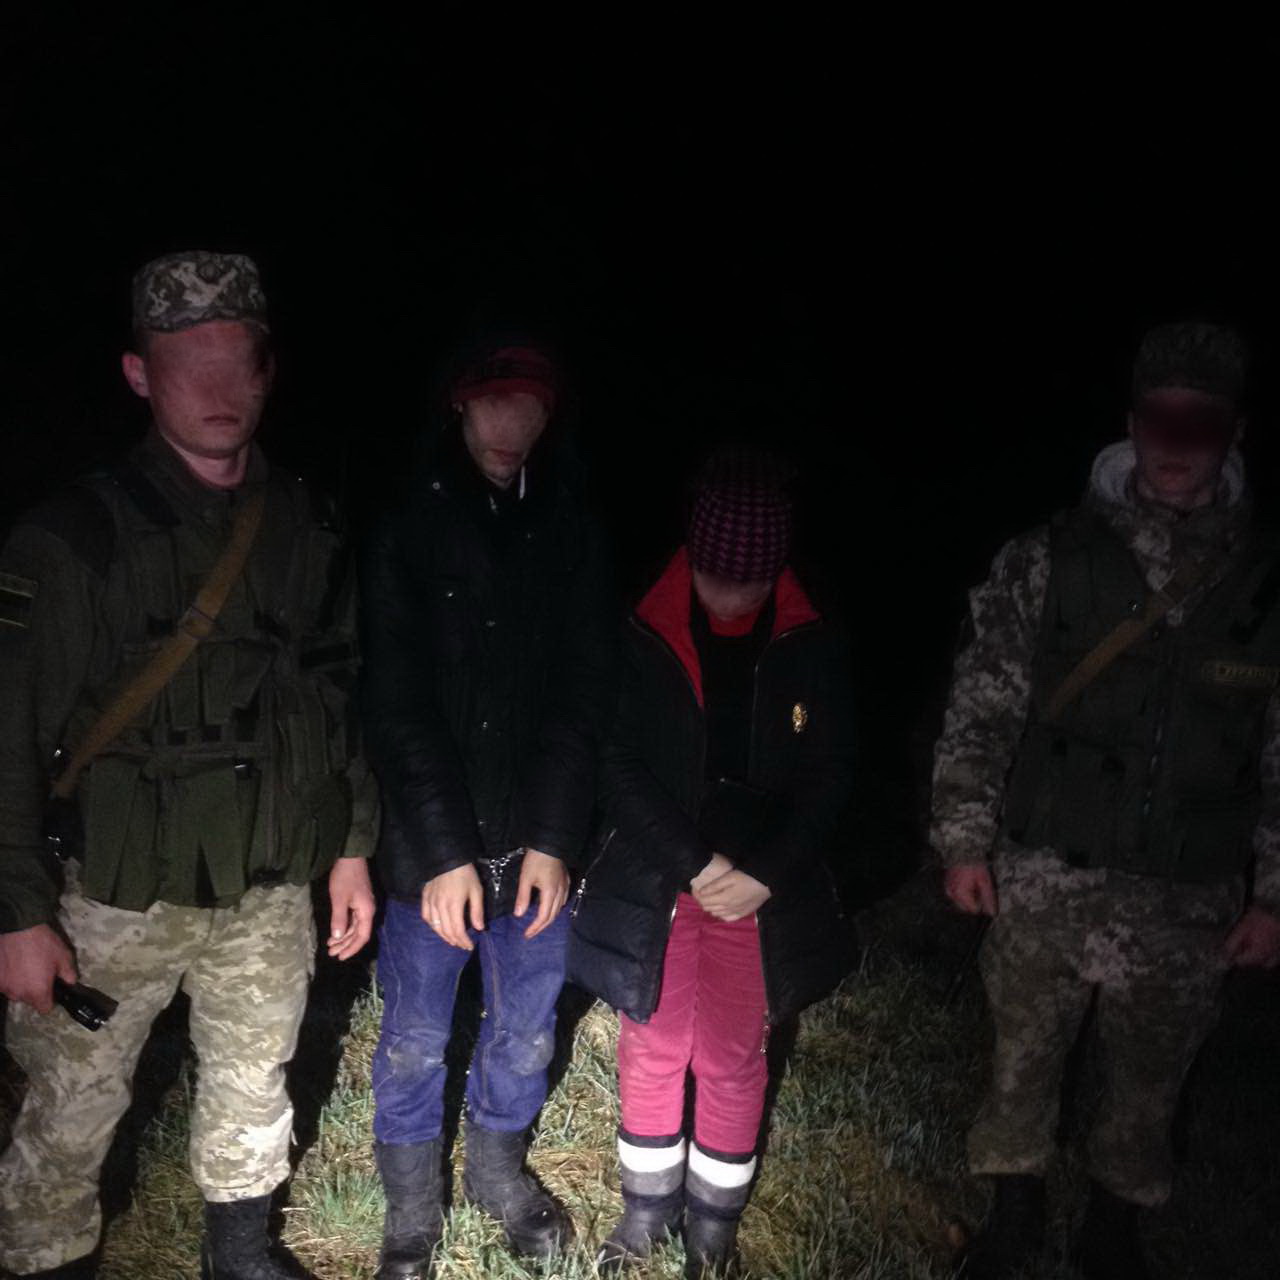 Сегодня ночью пограничники Чопского отряда помешали незаконному пересечению границы двумя молодыми людьми, которые пытались попасть в Словакию вне пункта пропуска. 